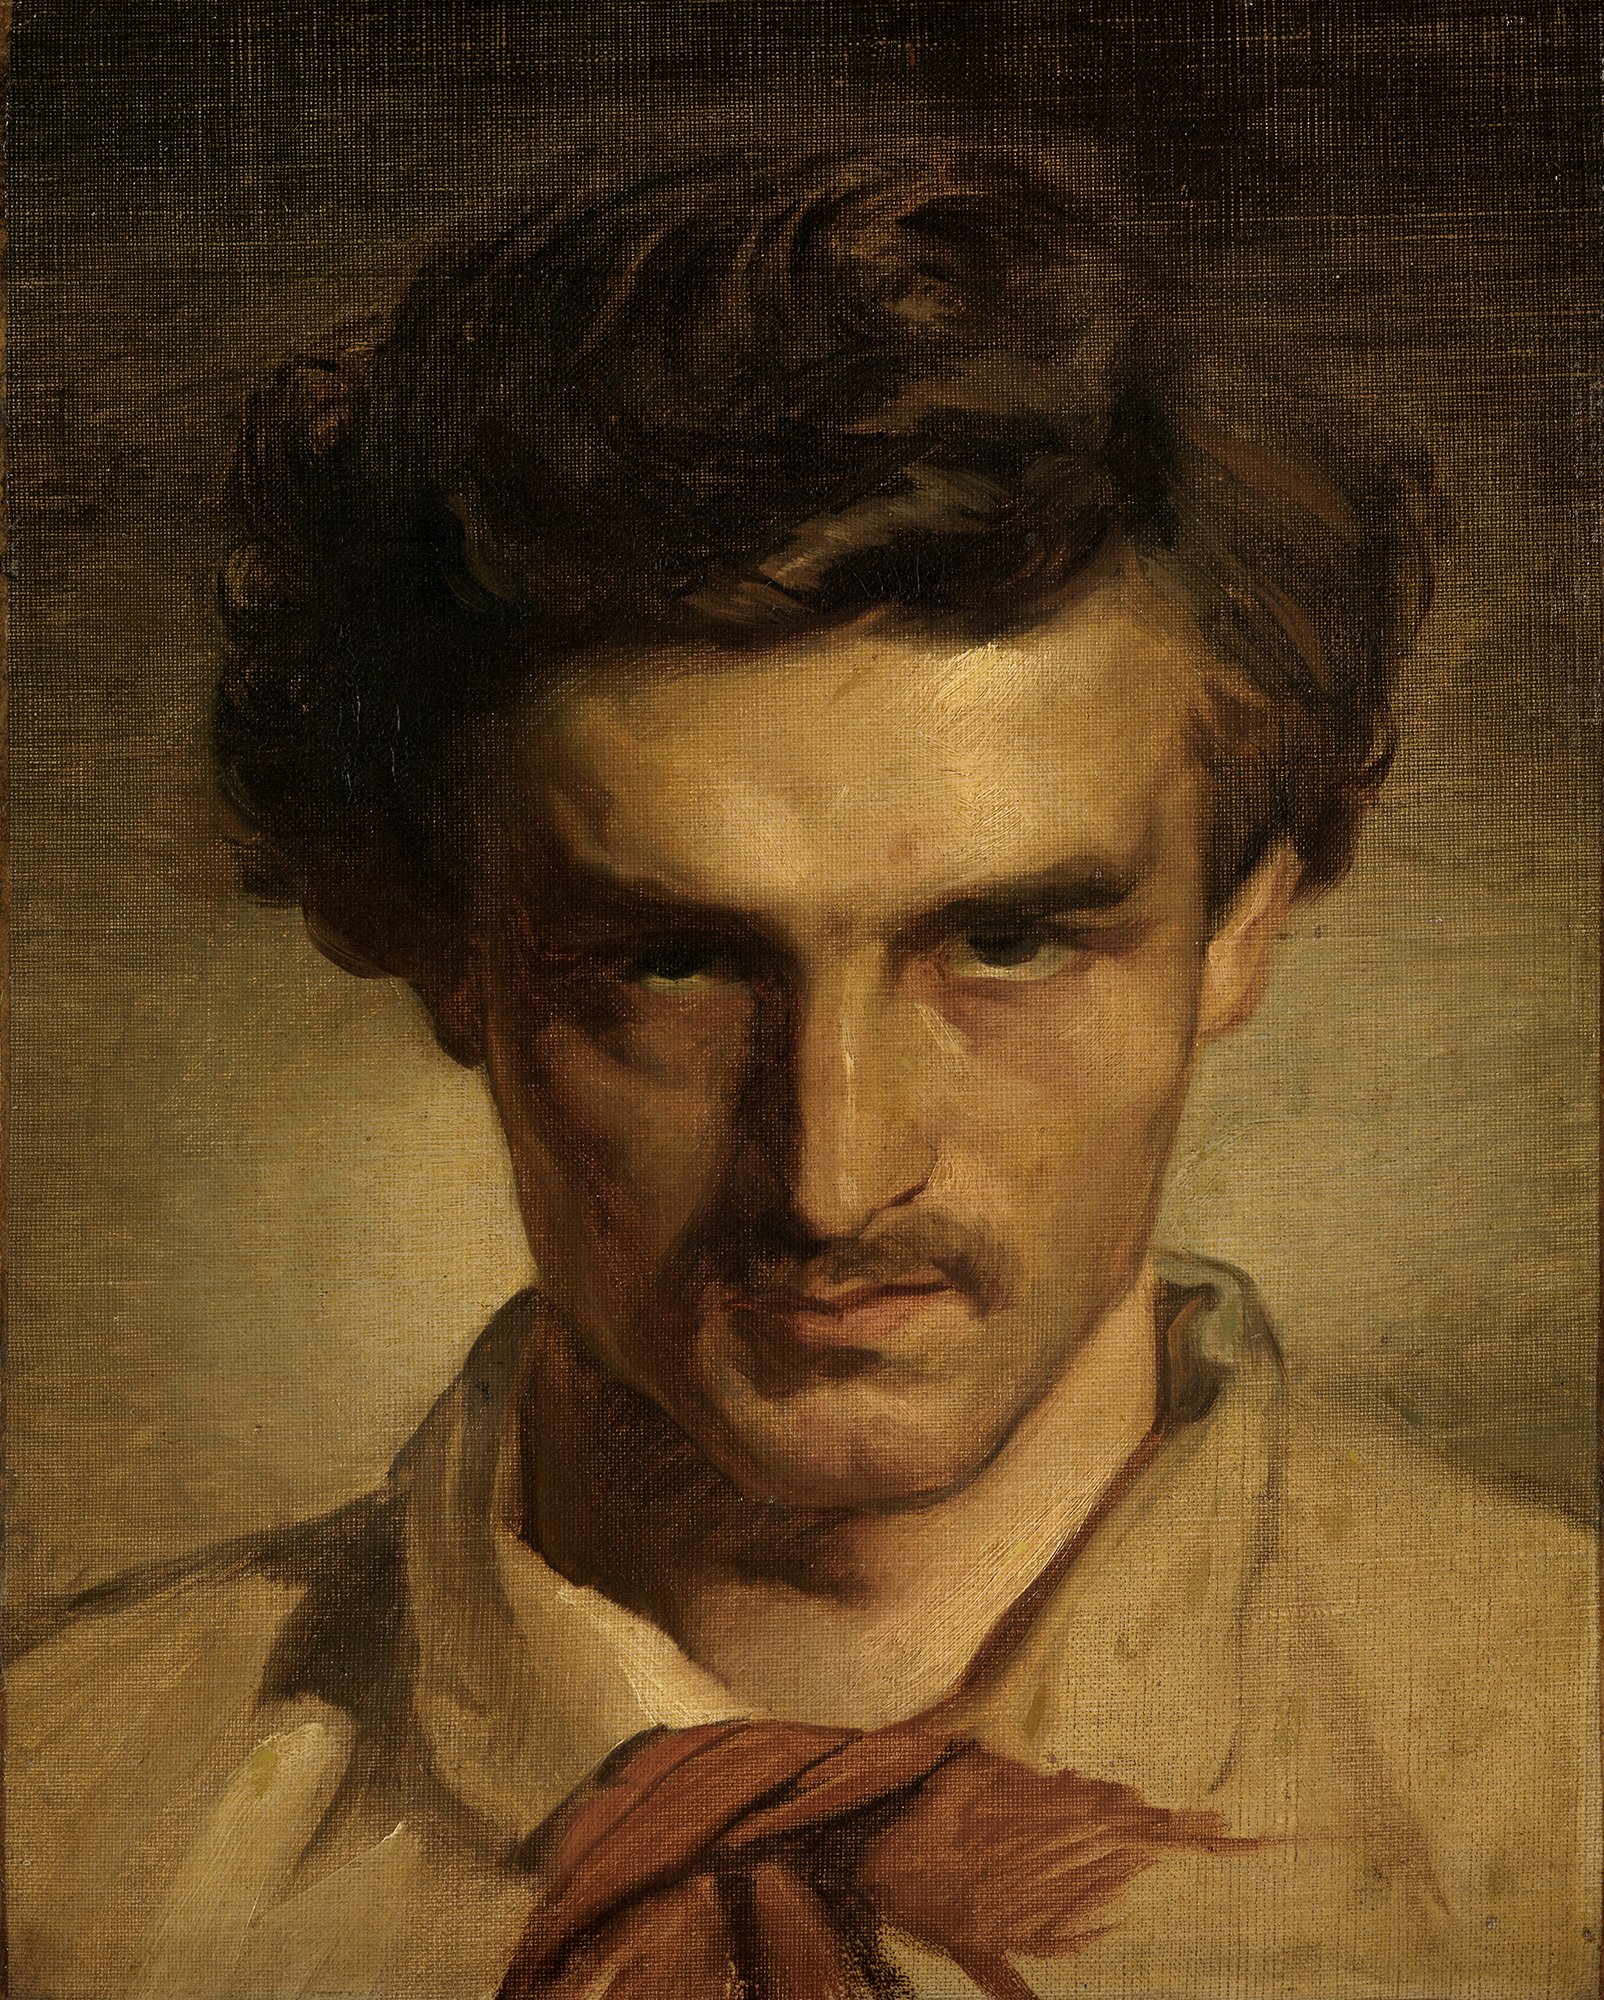 Abbildung des Werks "Jugendliches Selbstbildnis" von Anselm Feuerbach aus dem Jahr 1852/53. Der Künstler hat einen Schnäuzer und mittellange braune Haare.